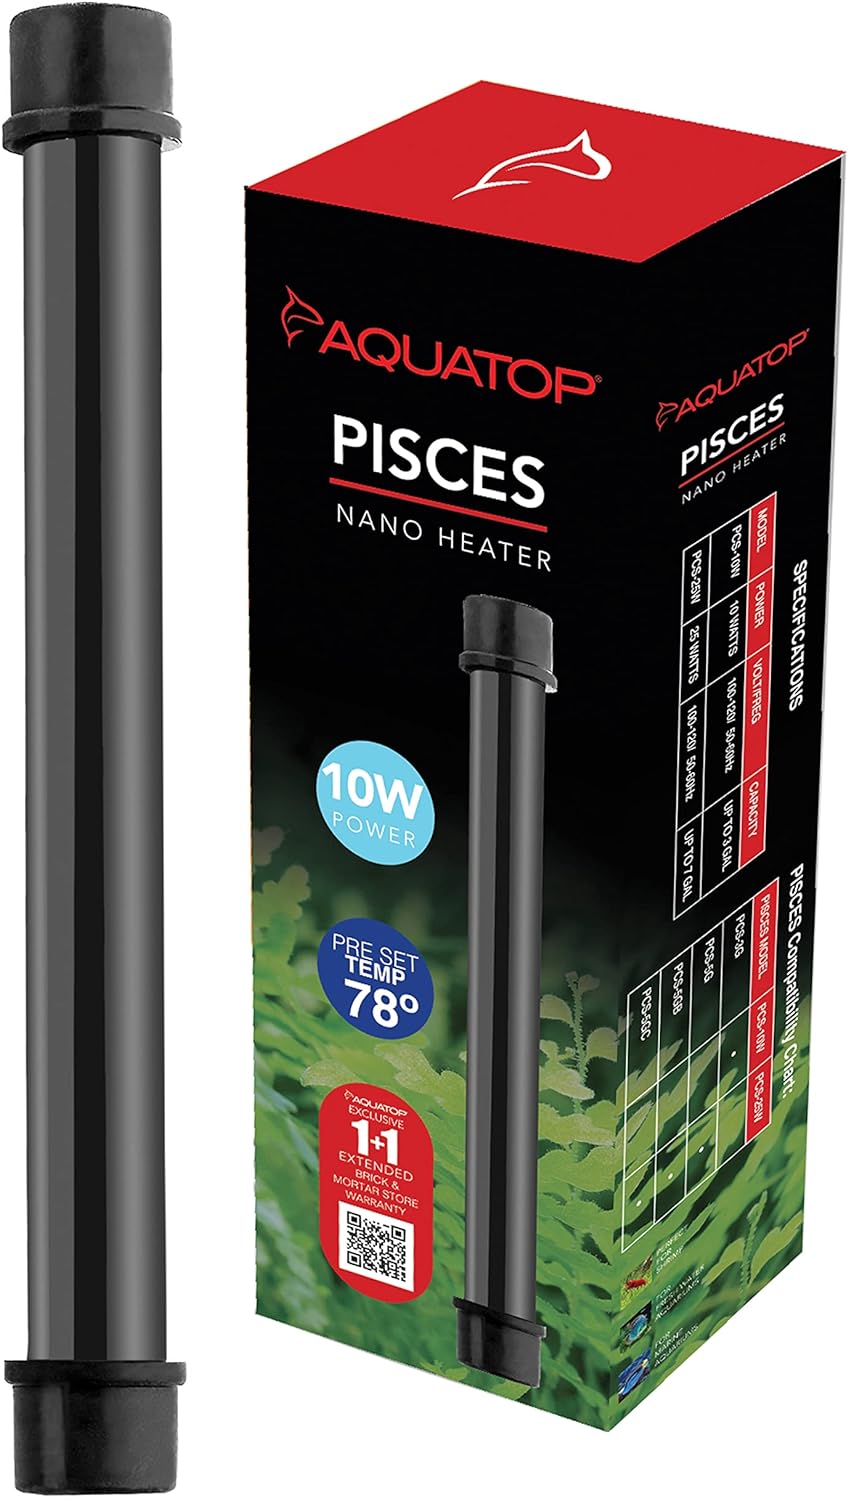 Pisces Nano Heater - AquaTop